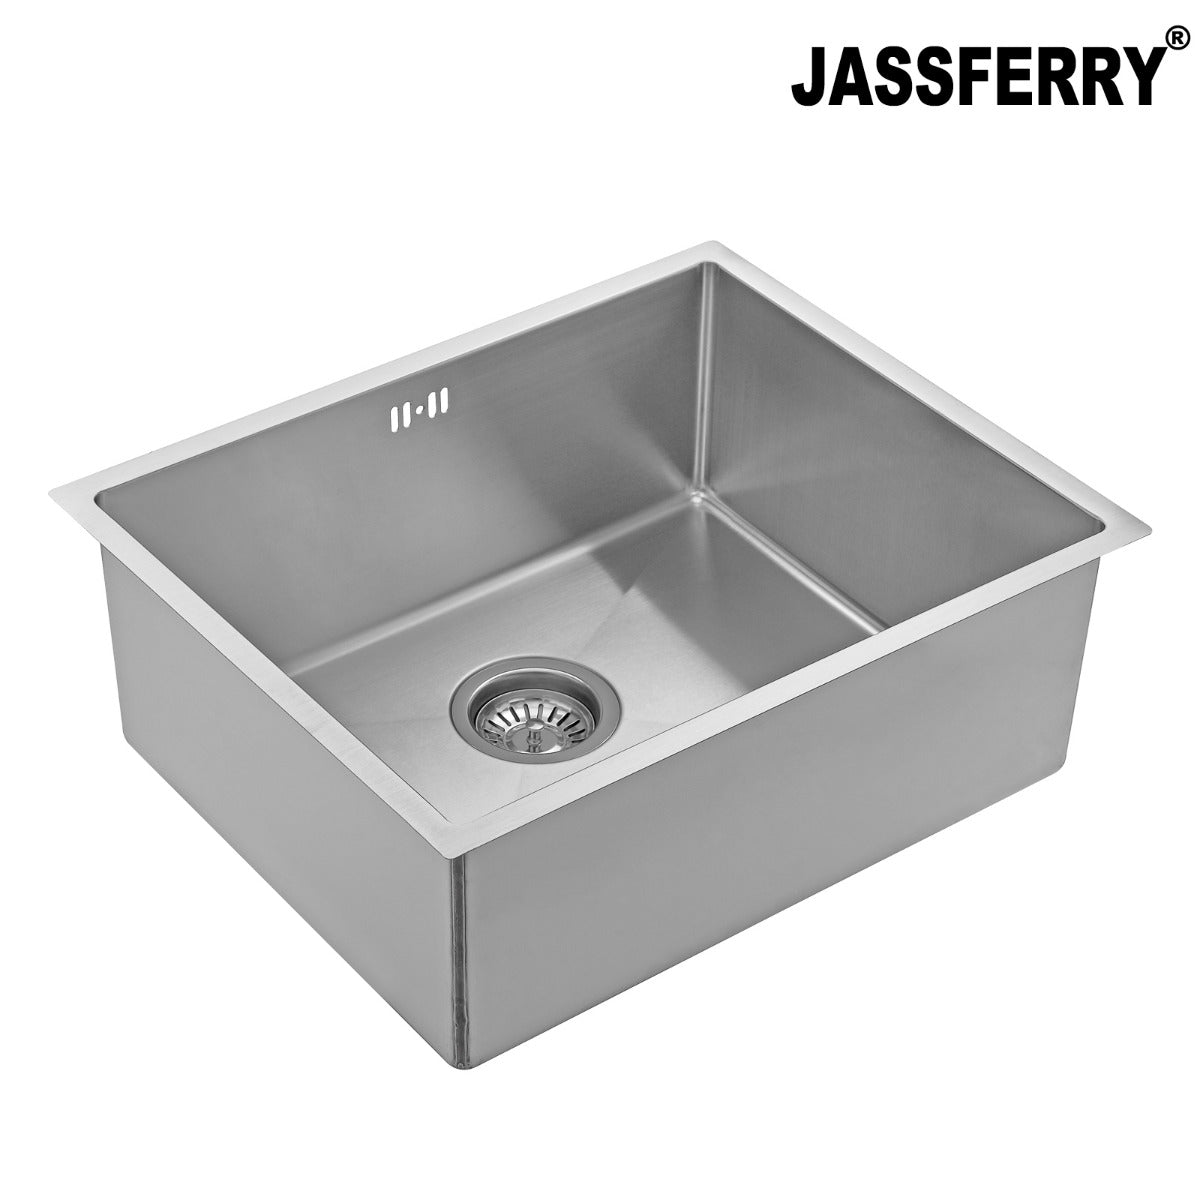 JassferryJASSFERRY Undermount Stainless Steel Kitchen Sink Handmade 1 Bowl - 785Kitchen Sinks